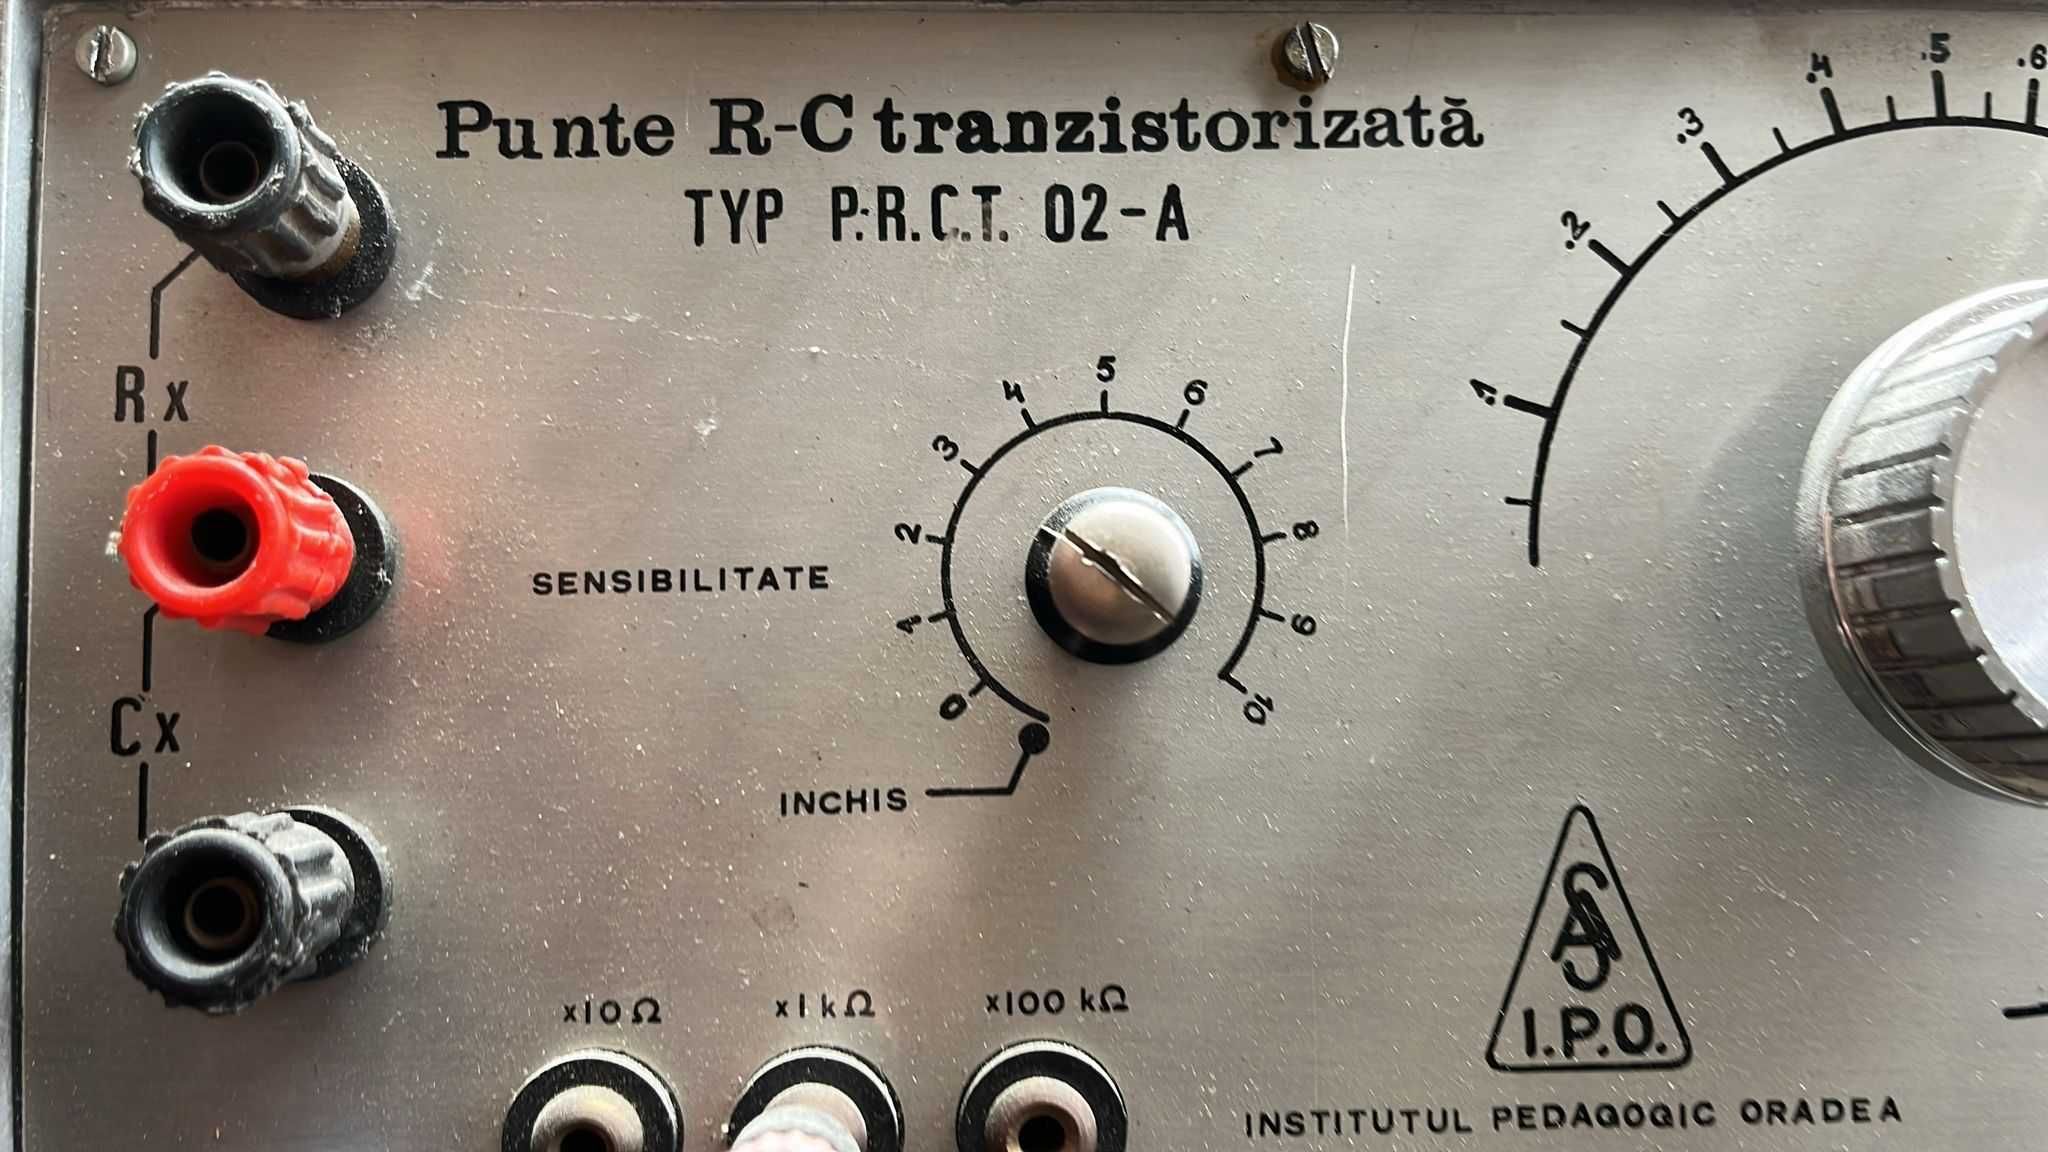 Punte de măsură R-C tranzistorizată! - P.R.C.T. 02-A